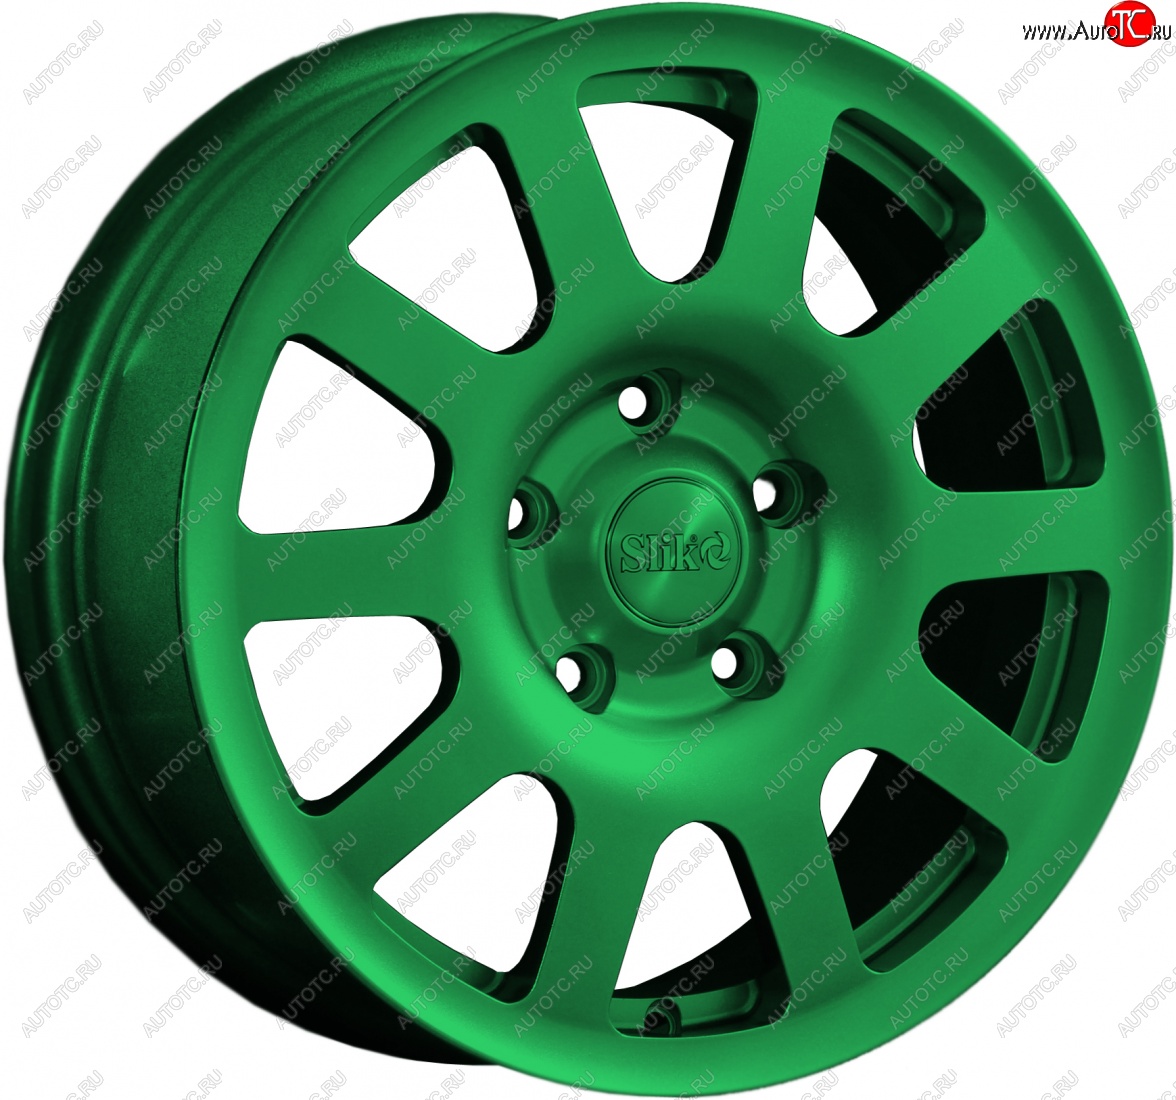 18 999 р. Кованый диск Slik Sport 6.5x16 (Зеленый) Hyundai Creta GS рестайлинг (2019-2021) 5x114.3xDIA67.1xET43.0 (Цвет: Зеленый)